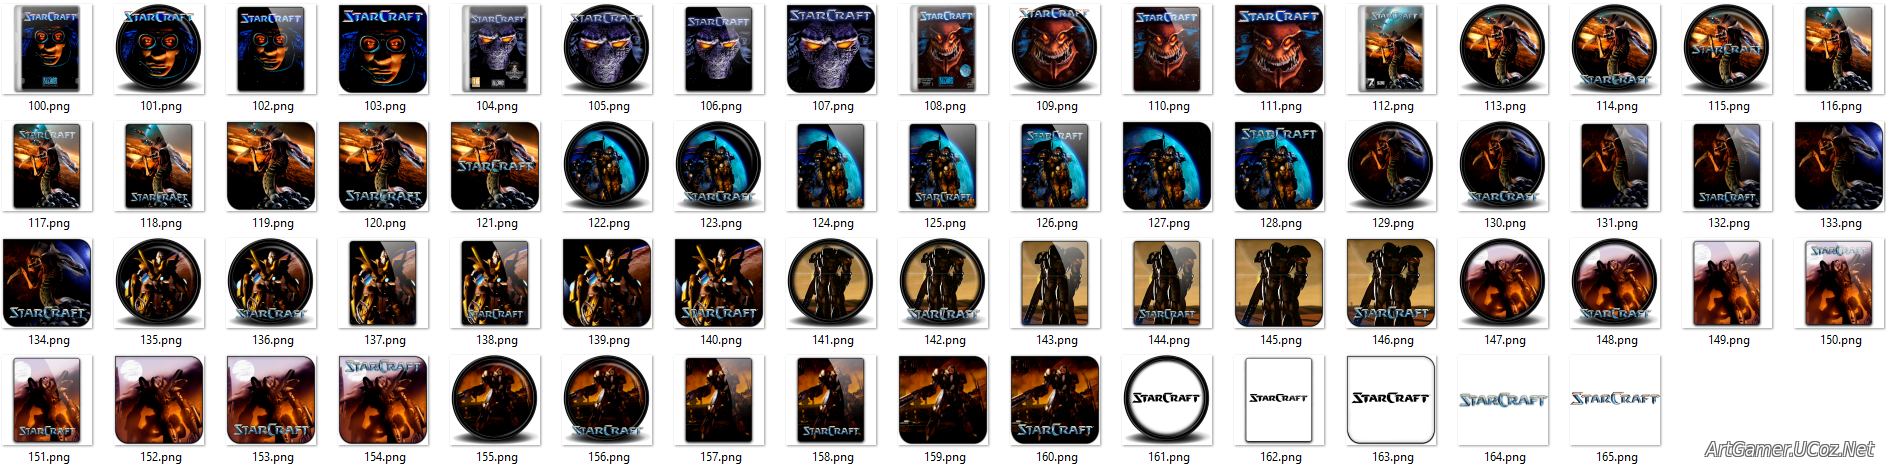 Иконки из набора к игре StarCraft